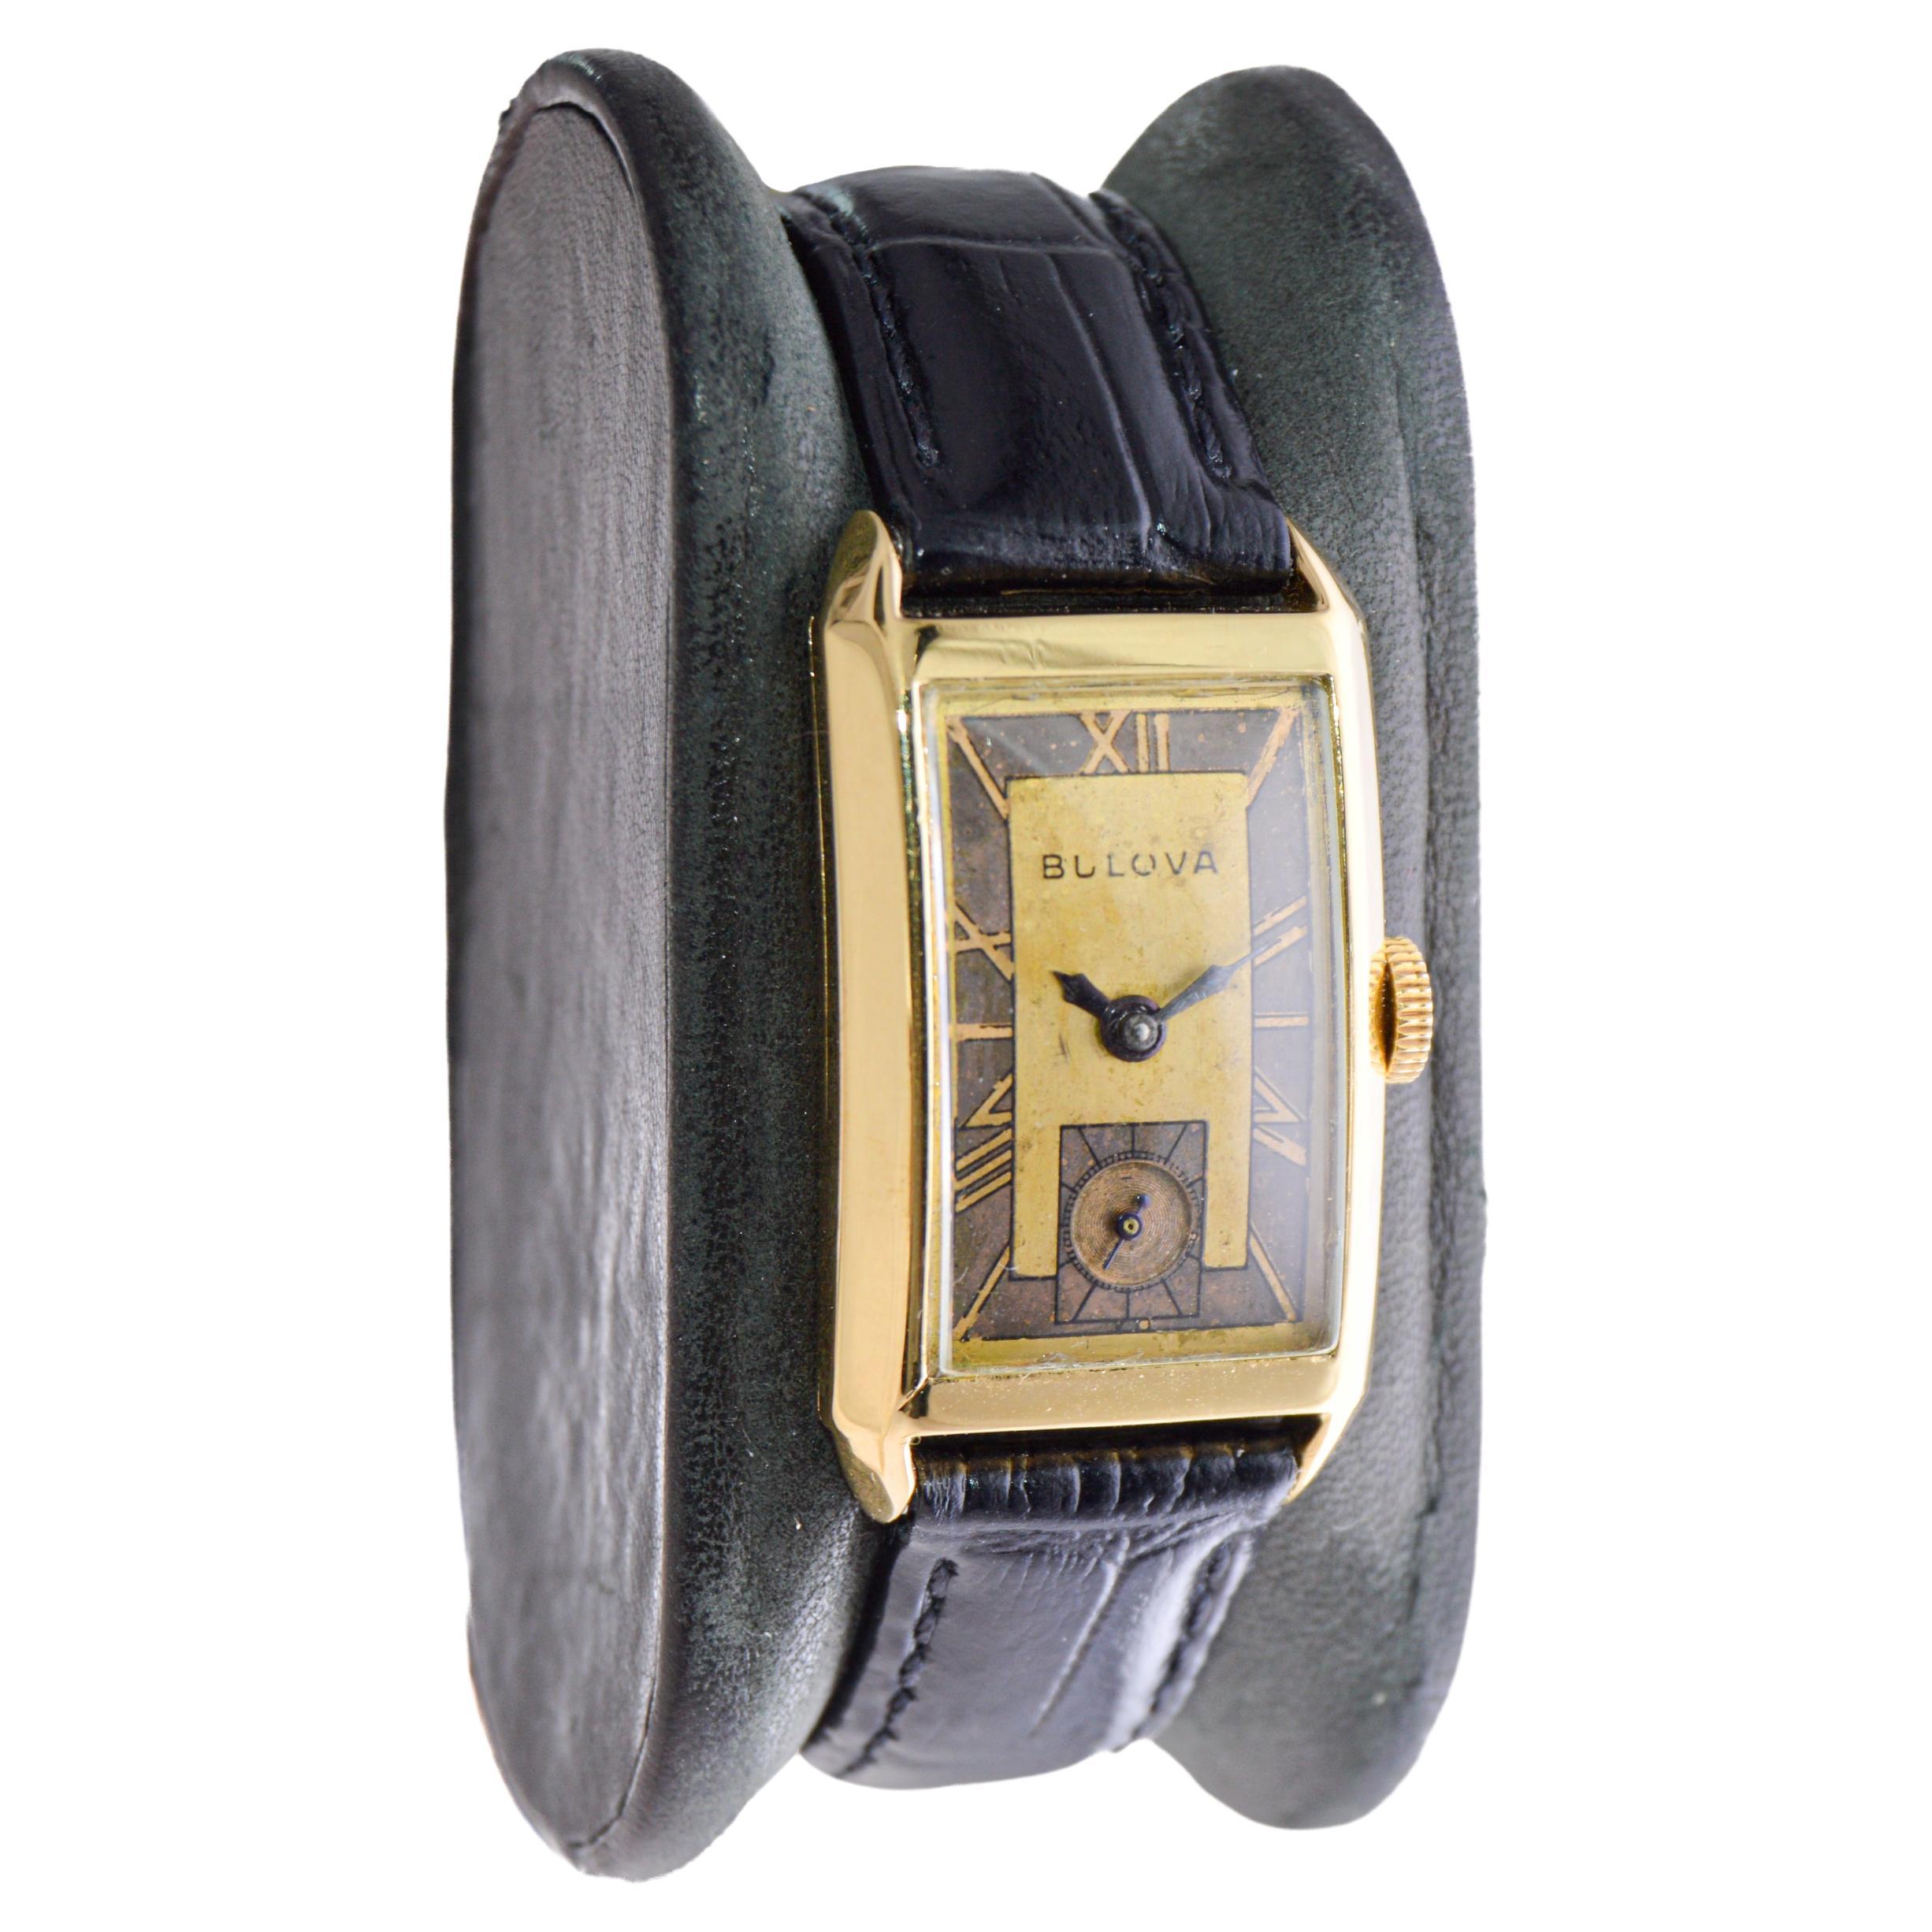 FABRIK / HAUS: Bulova Uhrenfabrik
STIL / REFERENZ: Art Deco / Curvex Stil 
METALL / MATERIAL: Gelbgold gefüllt
CIRCA / JAHR: 1940er Jahre
ABMESSUNGEN / GRÖSSE: Länge 36mm X Breite 20mm
UHRWERK / KALIBER: Handaufzug / 21 Jewels / Kaliber